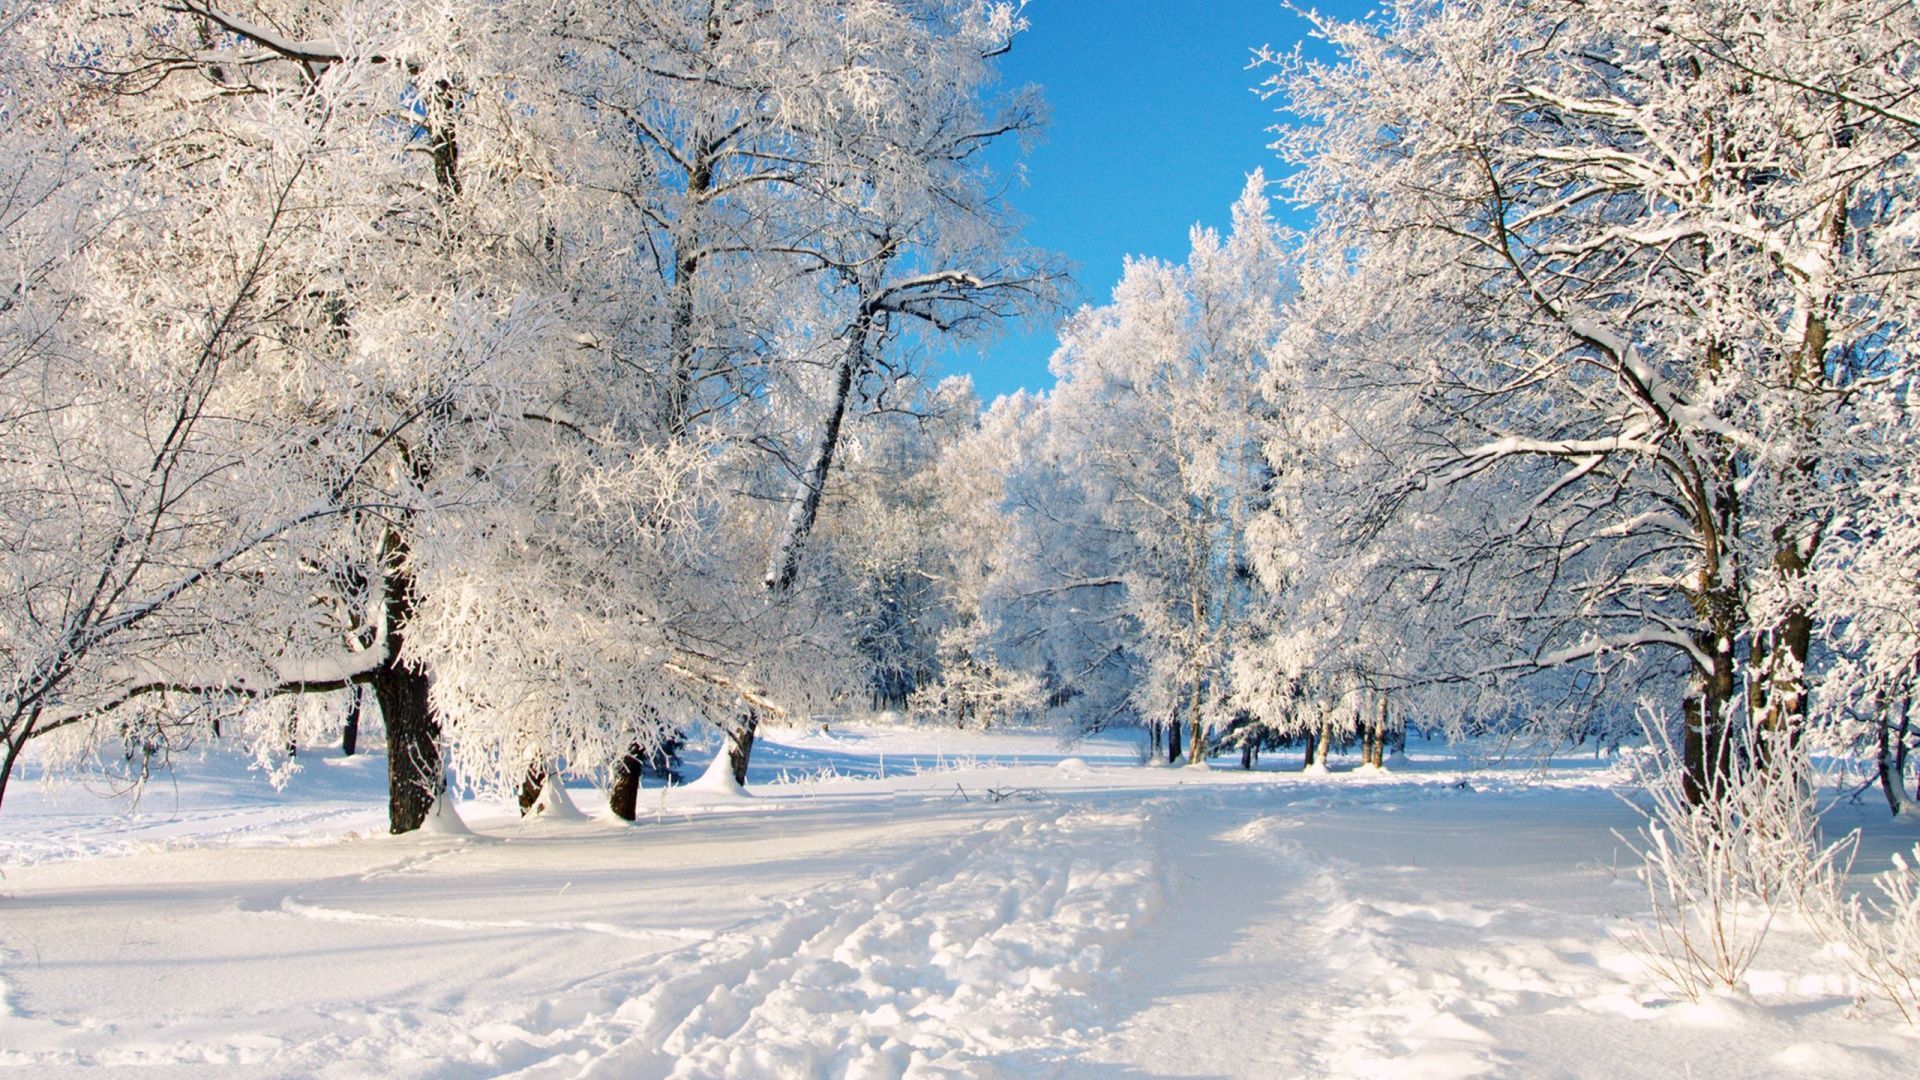 winter scenery. Dreamy Winter Scenery Wallpaper Widescreen. Winter desktop background, Winter scenery, Free winter wallpaper